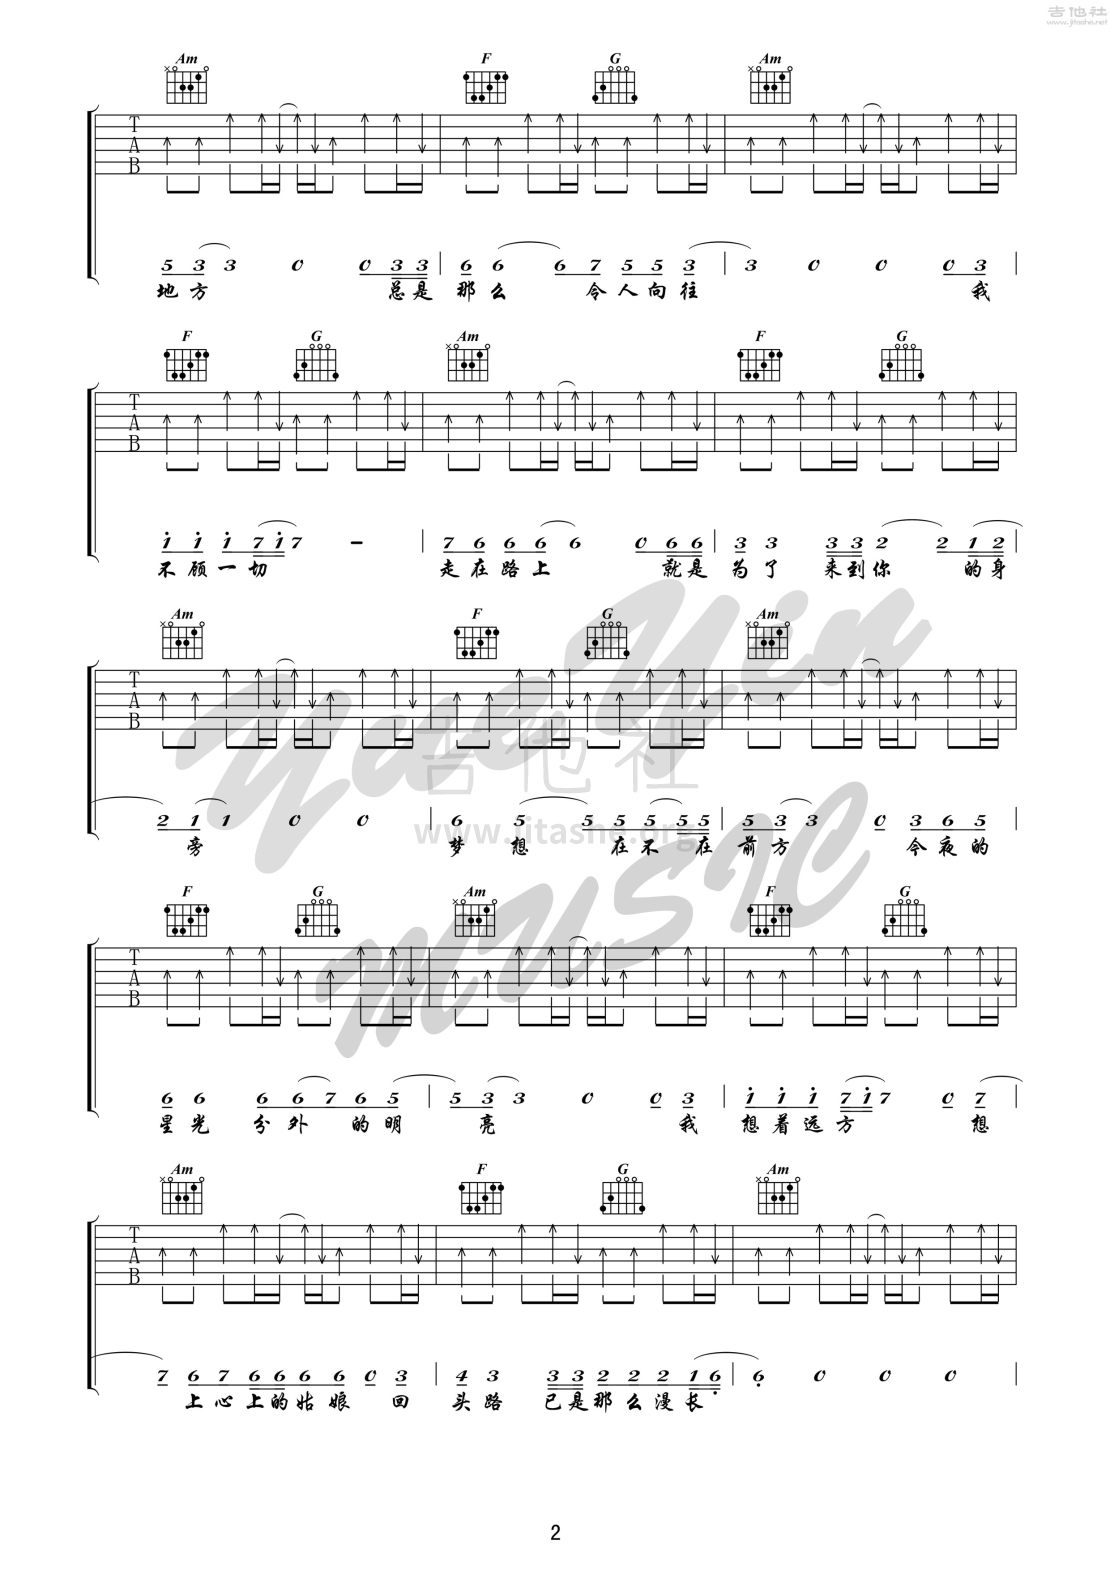 打印:公路之歌 吉他 （悦音之声音乐工作室吉他教学系列 痛仰乐队系列 I ）吉他谱_痛苦的信仰(痛仰)_公路之歌 2.jpg